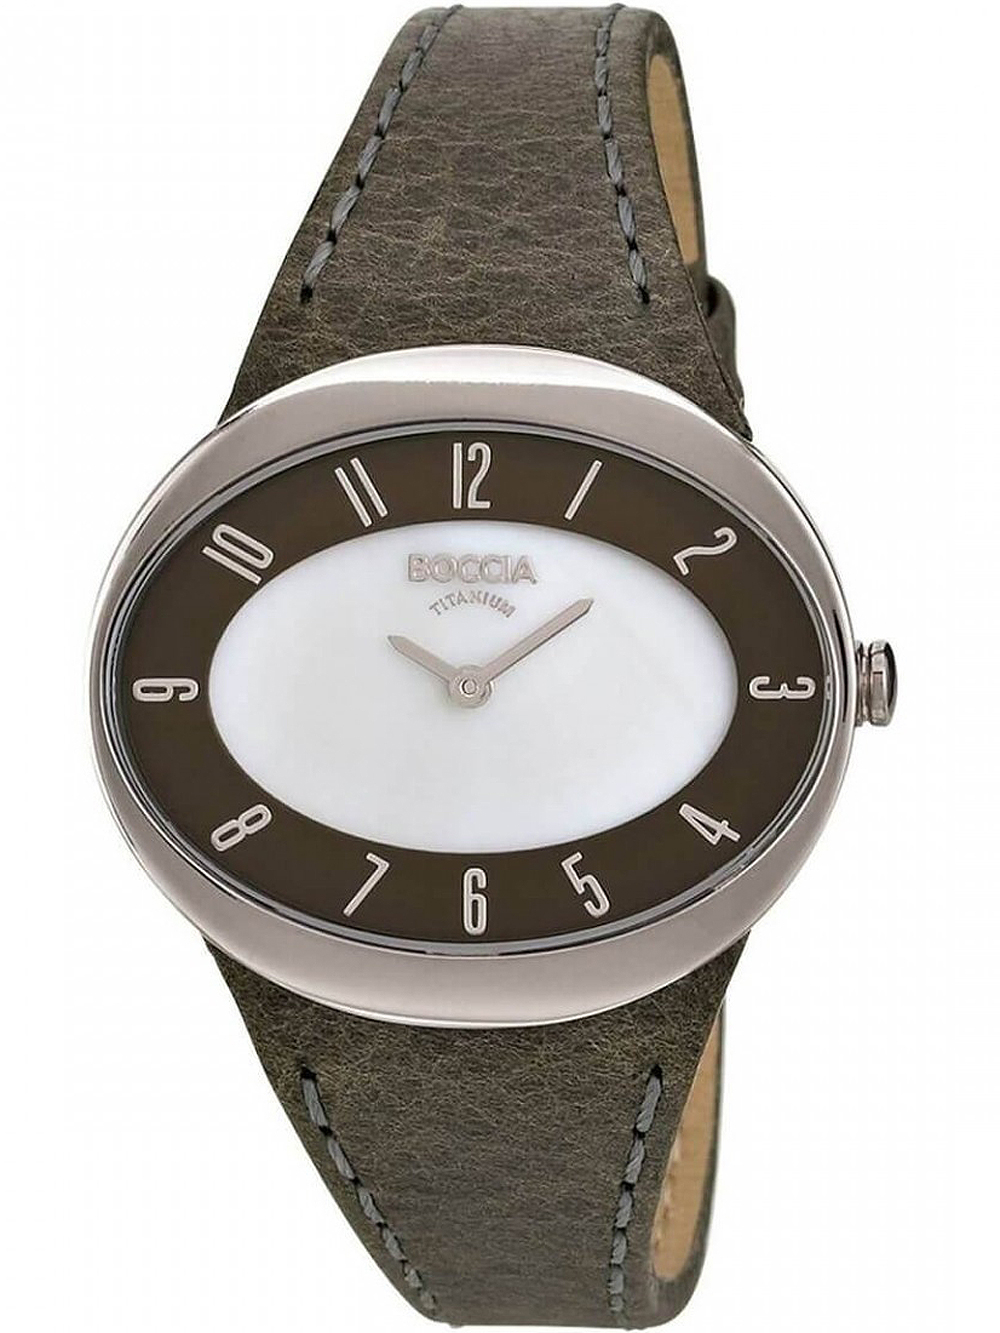 Dámské hodinky Boccia 3165-15 ladies watch titanium 36mm 5ATM